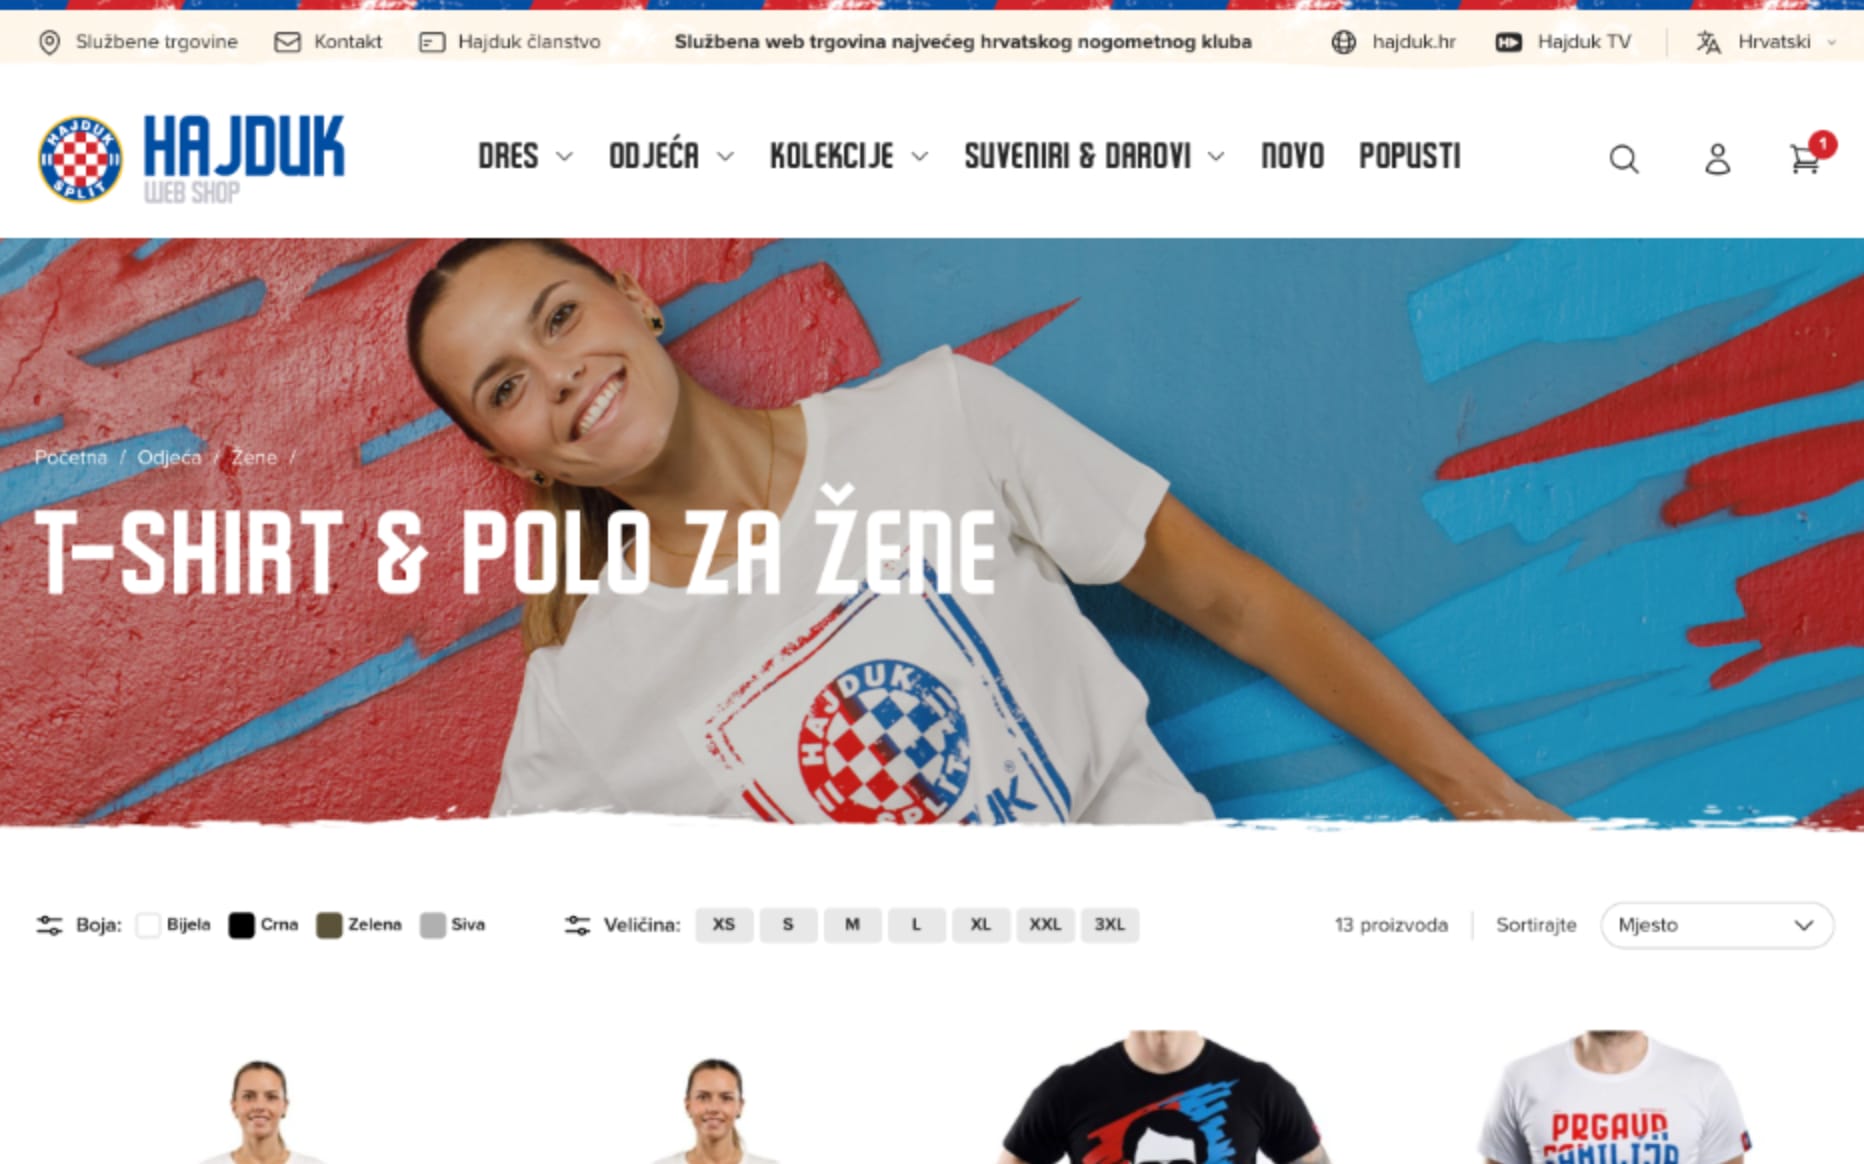 Hajduk Web Shop Category Page